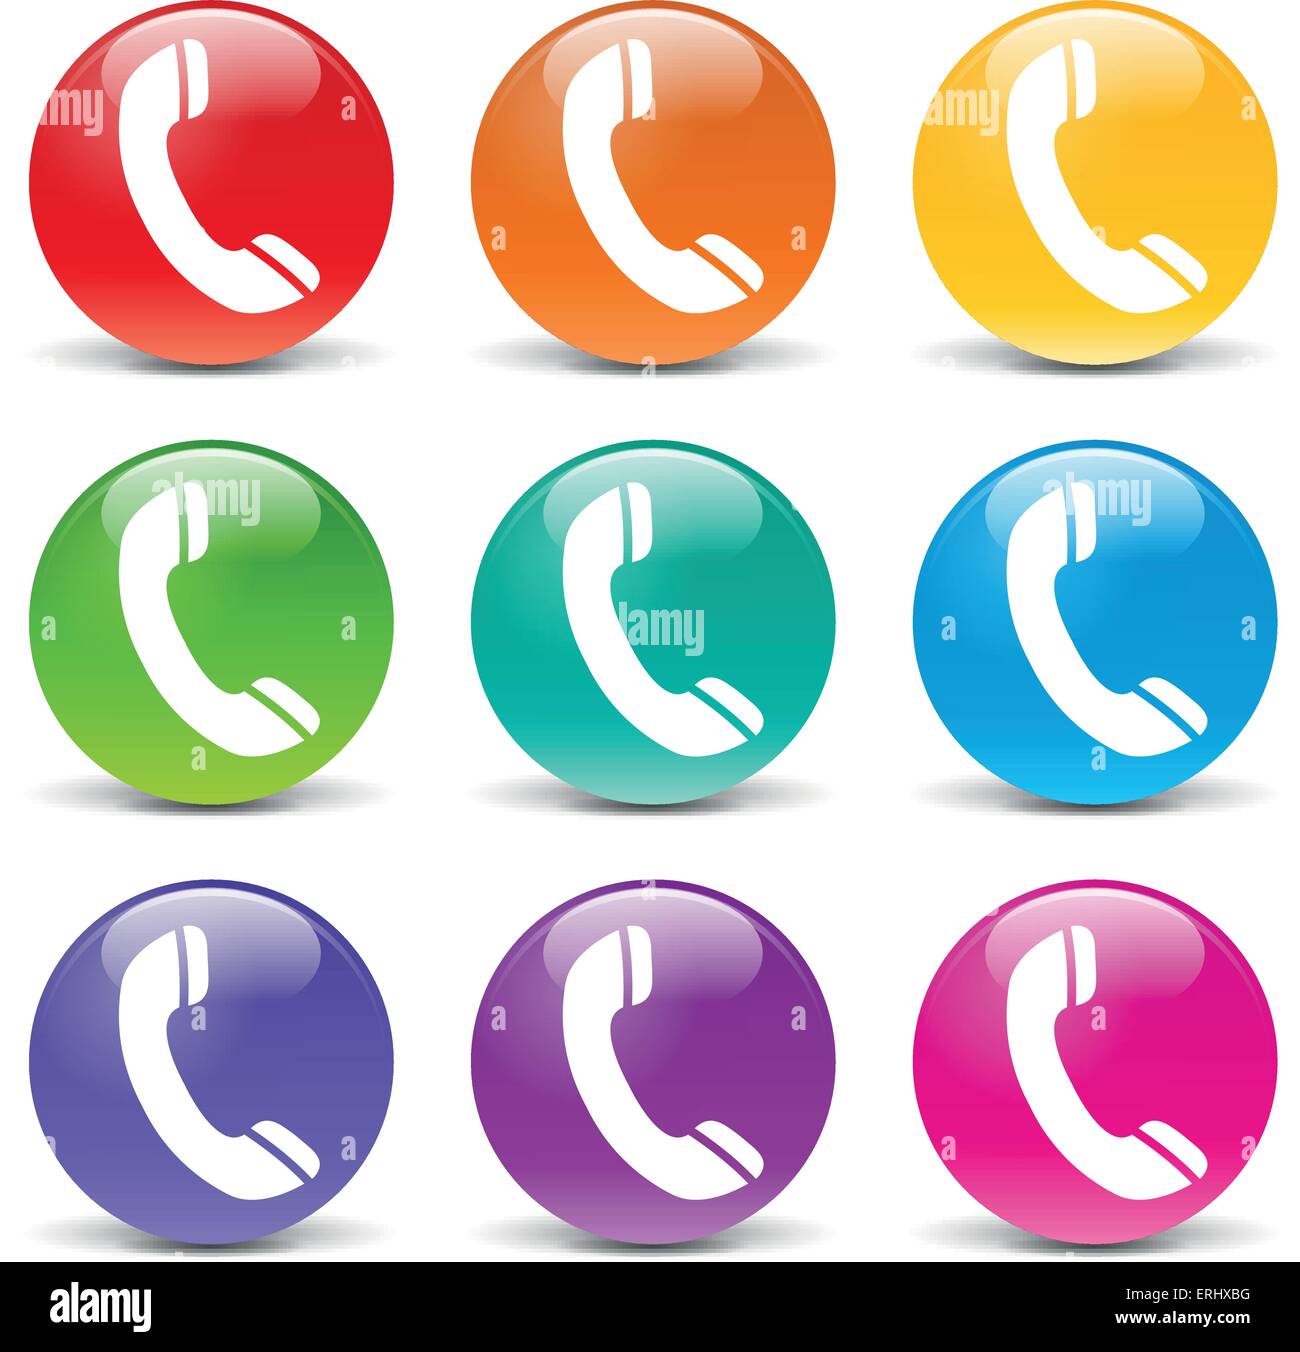 Vektor-Illustration des Telefons stellen Icons auf weißem Hintergrund Stock Vektor